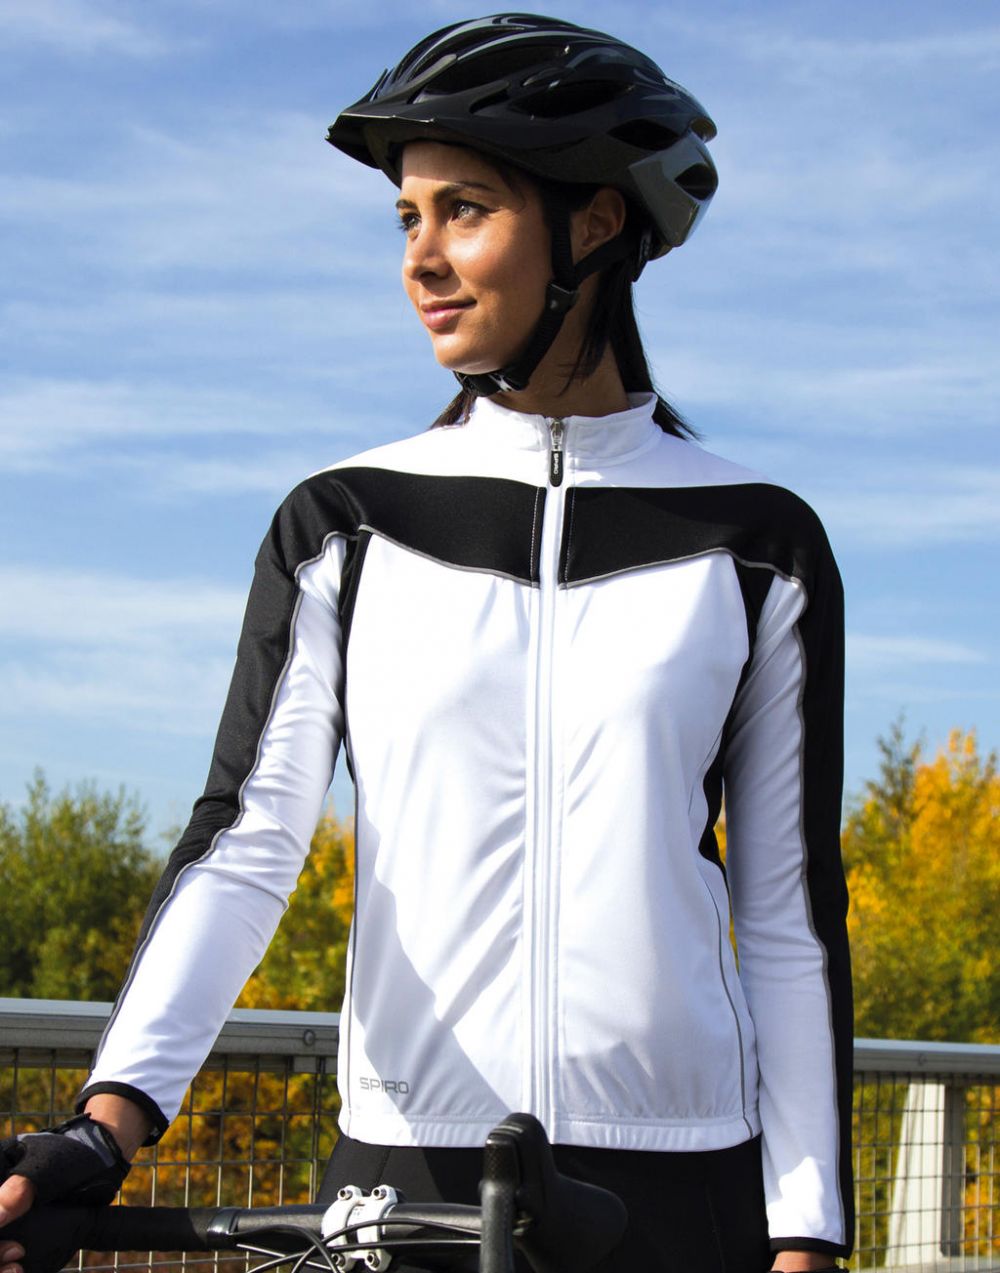 Equipaciones deportivas result top ciclismo manga larga mujer con publicidad vista 3